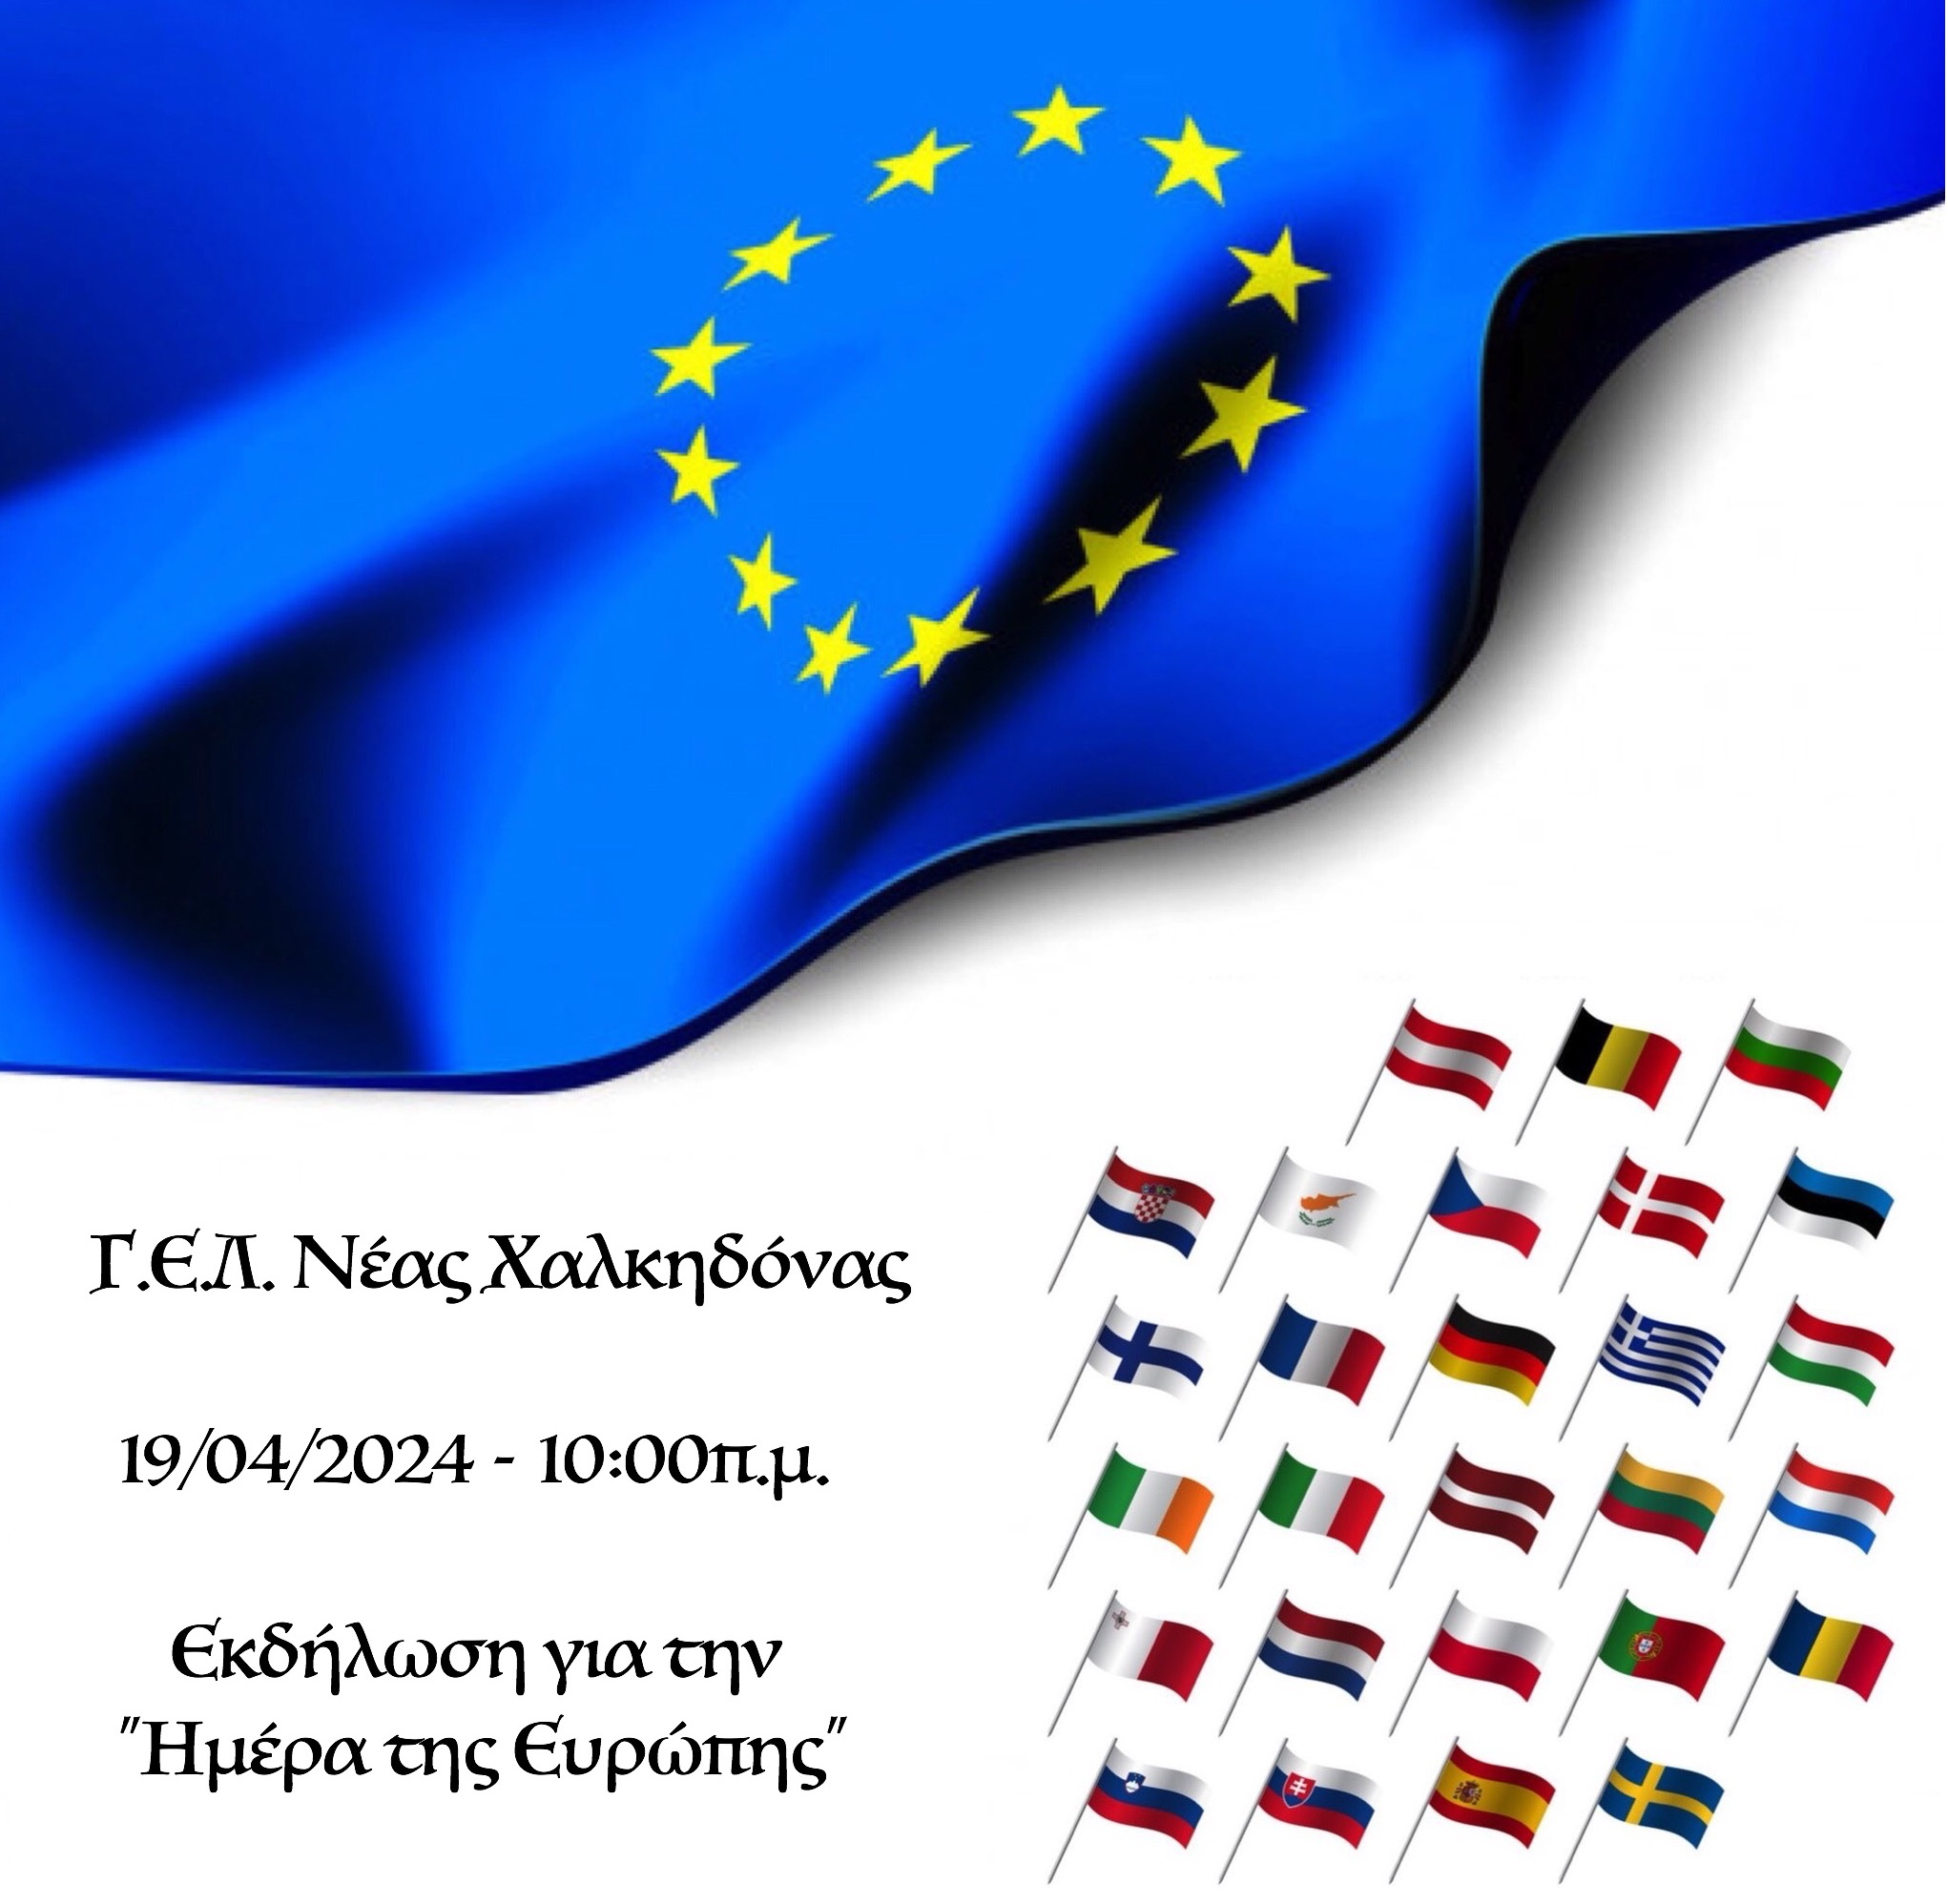 19/04/2024 - Εκδήλωση για την "Ημέρα της Ευρώπης"